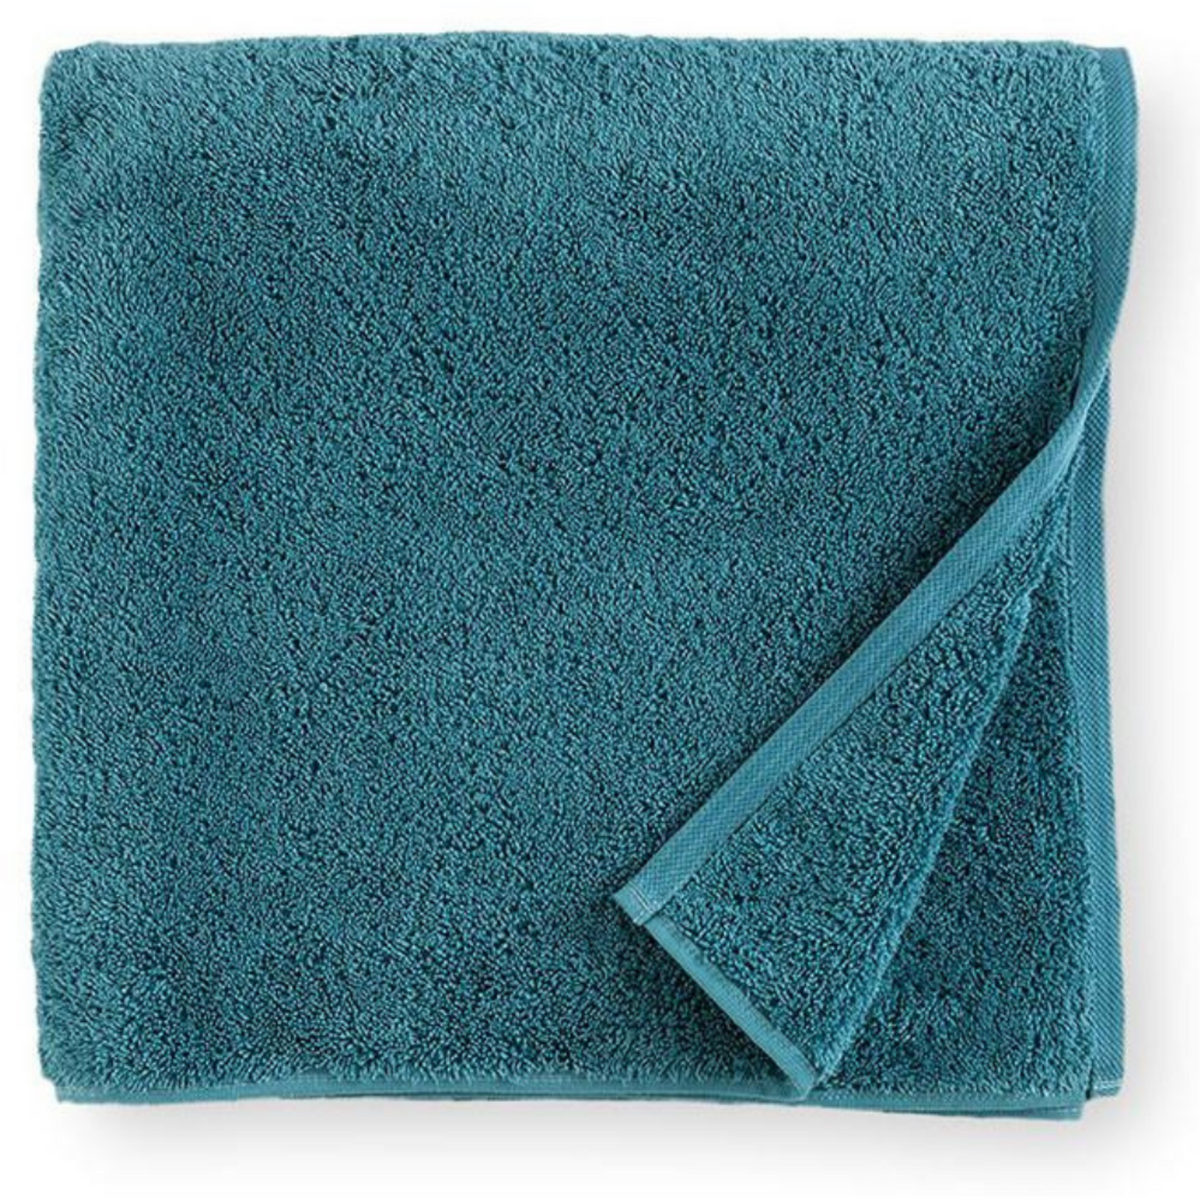 https://flandb.com/cdn/shop/products/Sferra-Sarma-Bath-Towel-Marine-Main_1200x.png?v=1668337038